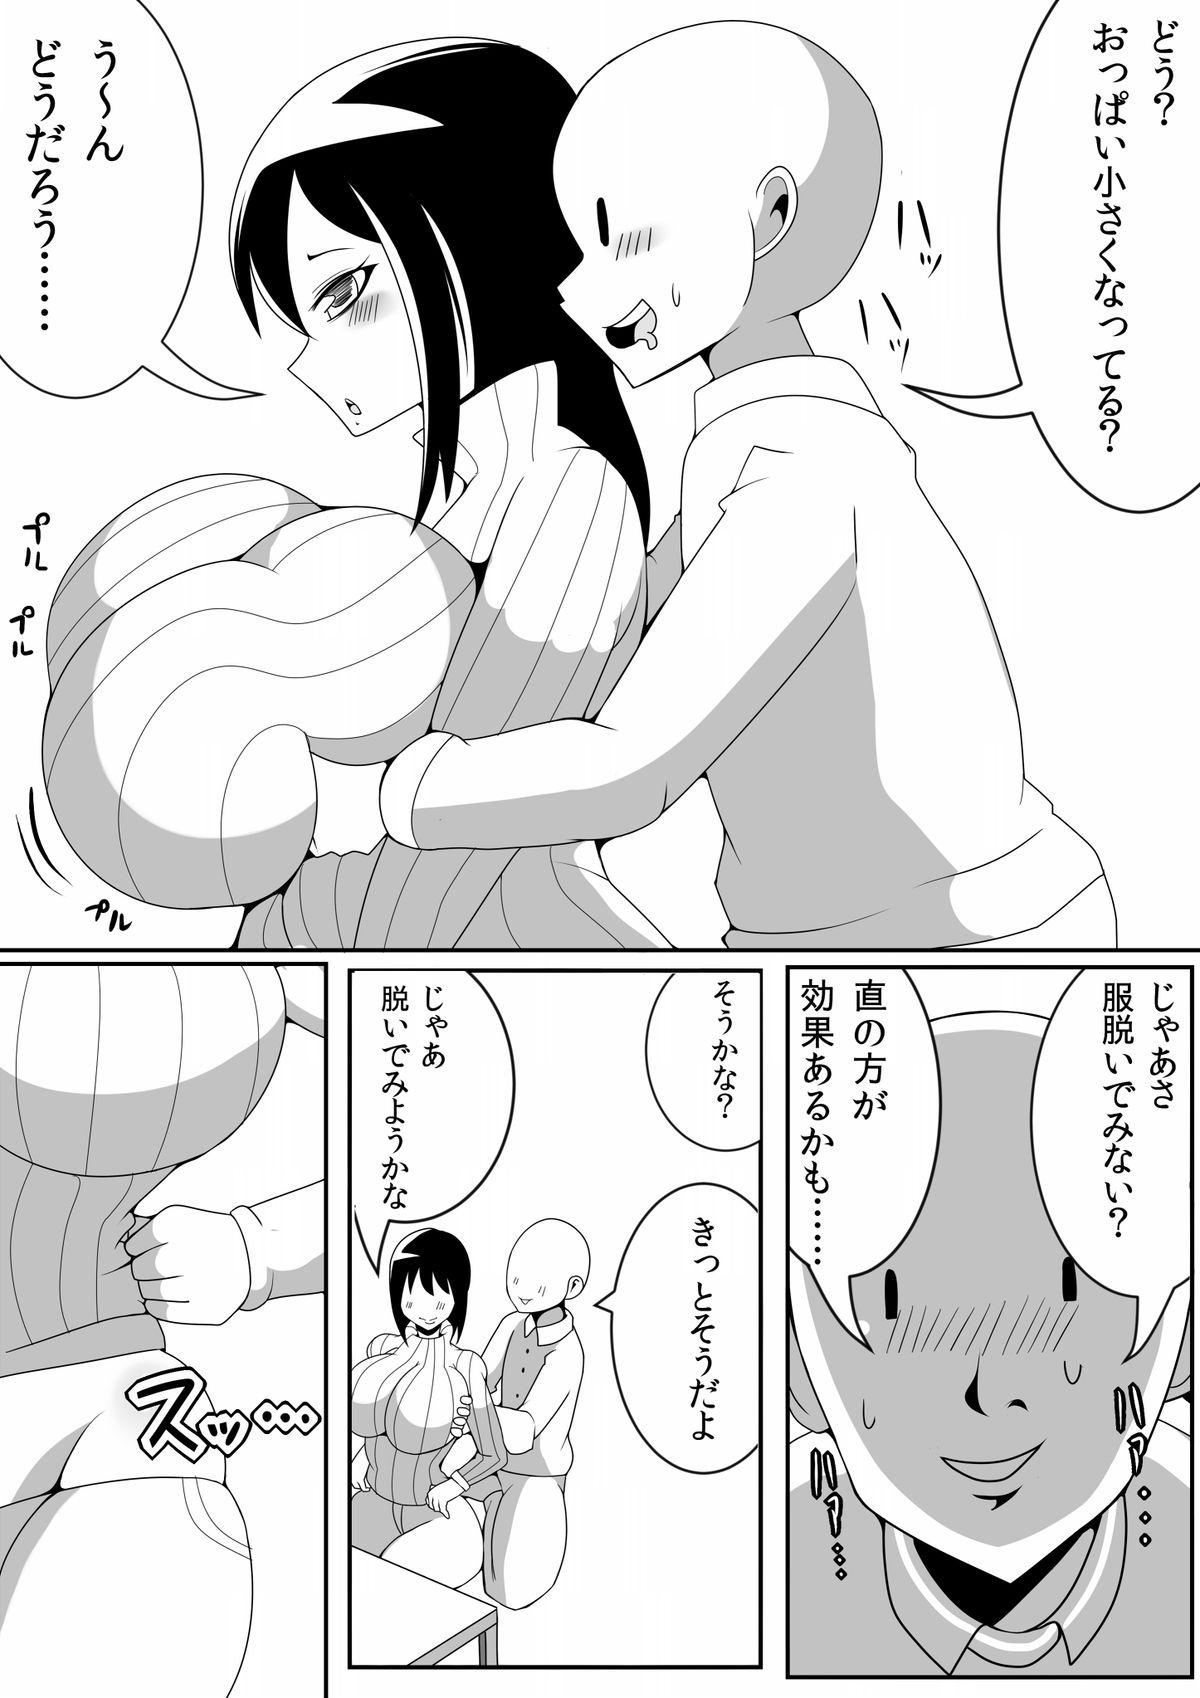 Cum In Pussy Asaokitara Oppai Konnani ga Okkiku Nacchatta Cumming - Page 10